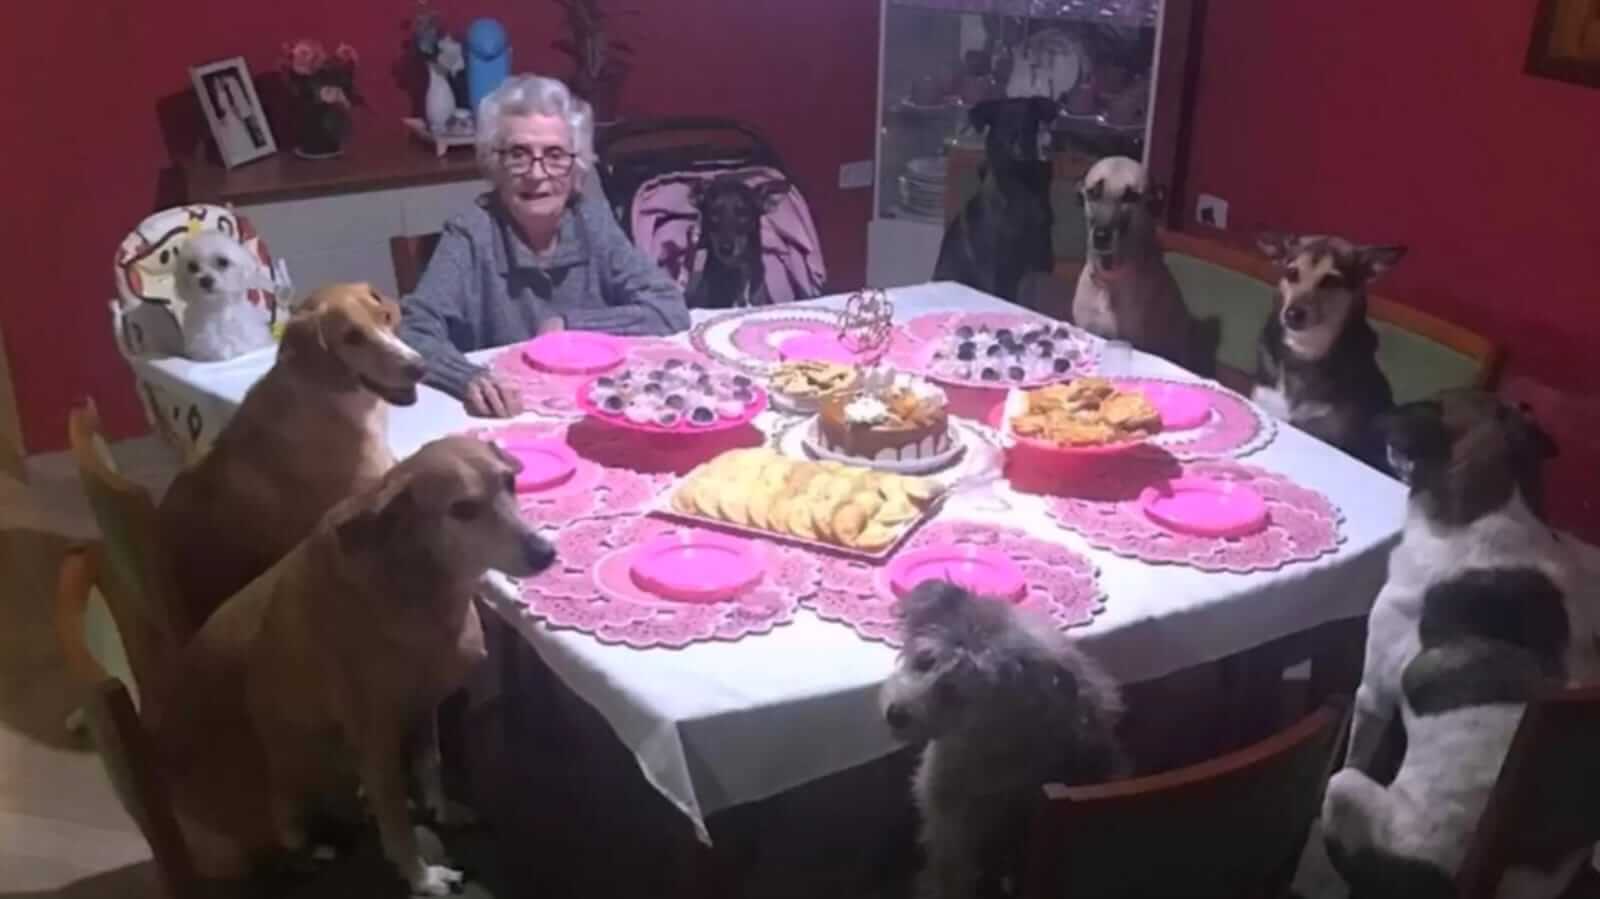 Festa de aniversário com cachorros